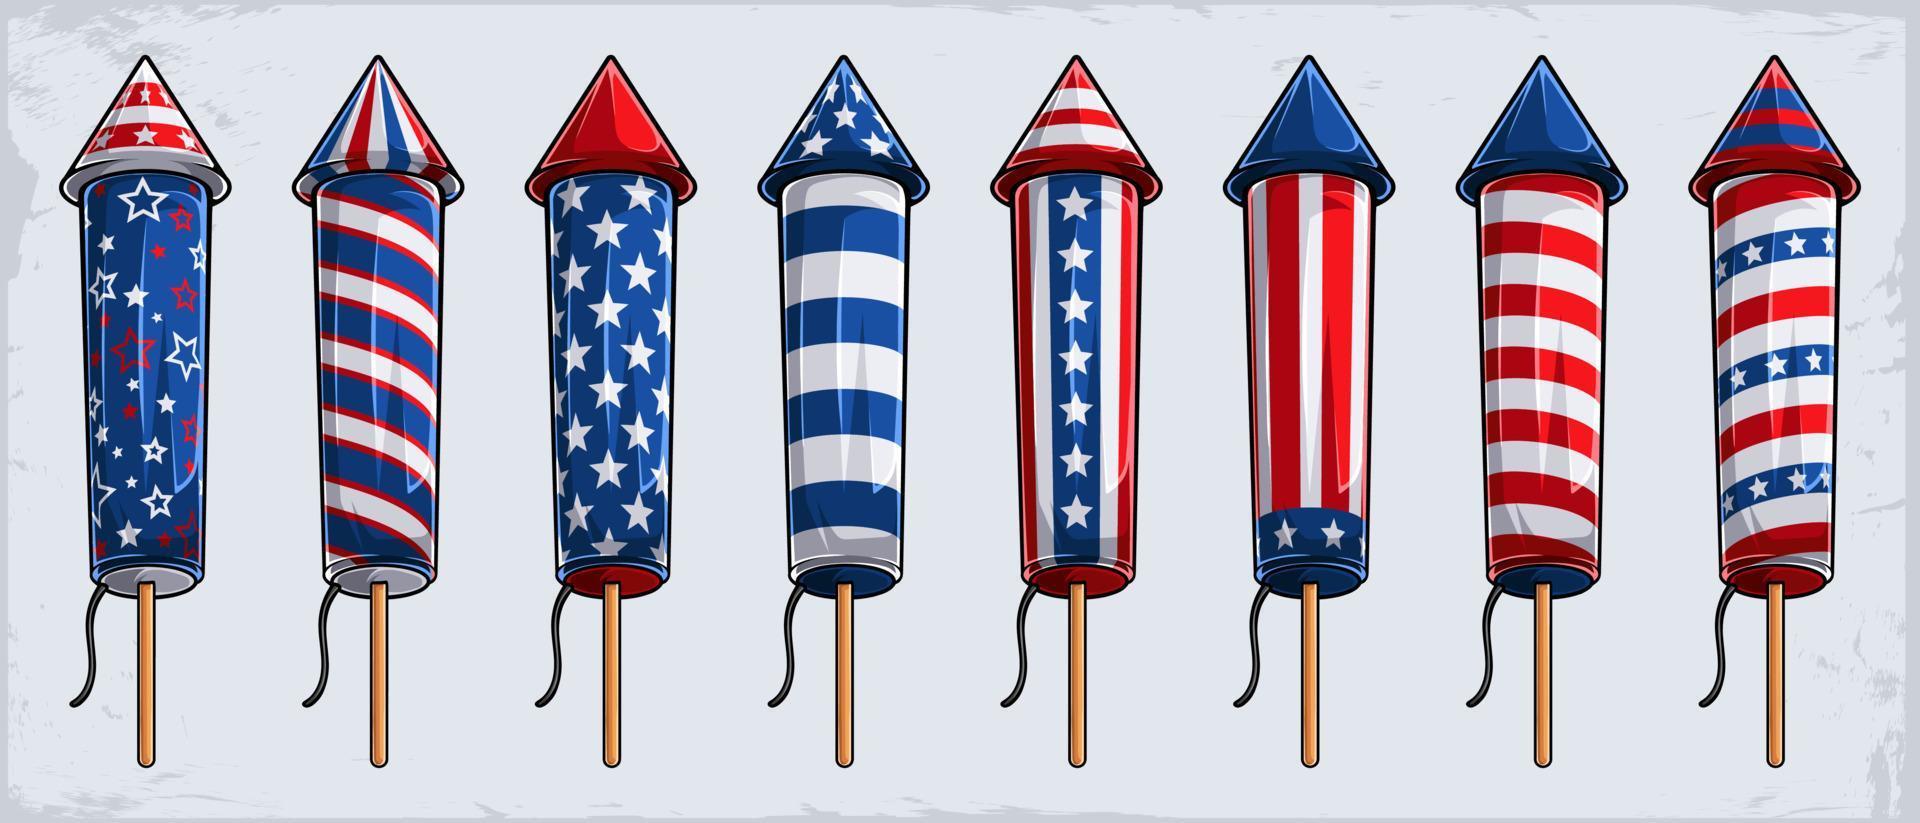 4 juli vuurwerk cracker raketten collectie met Amerikaanse vlag patroon voor Amerikaanse onafhankelijkheidsdag vector